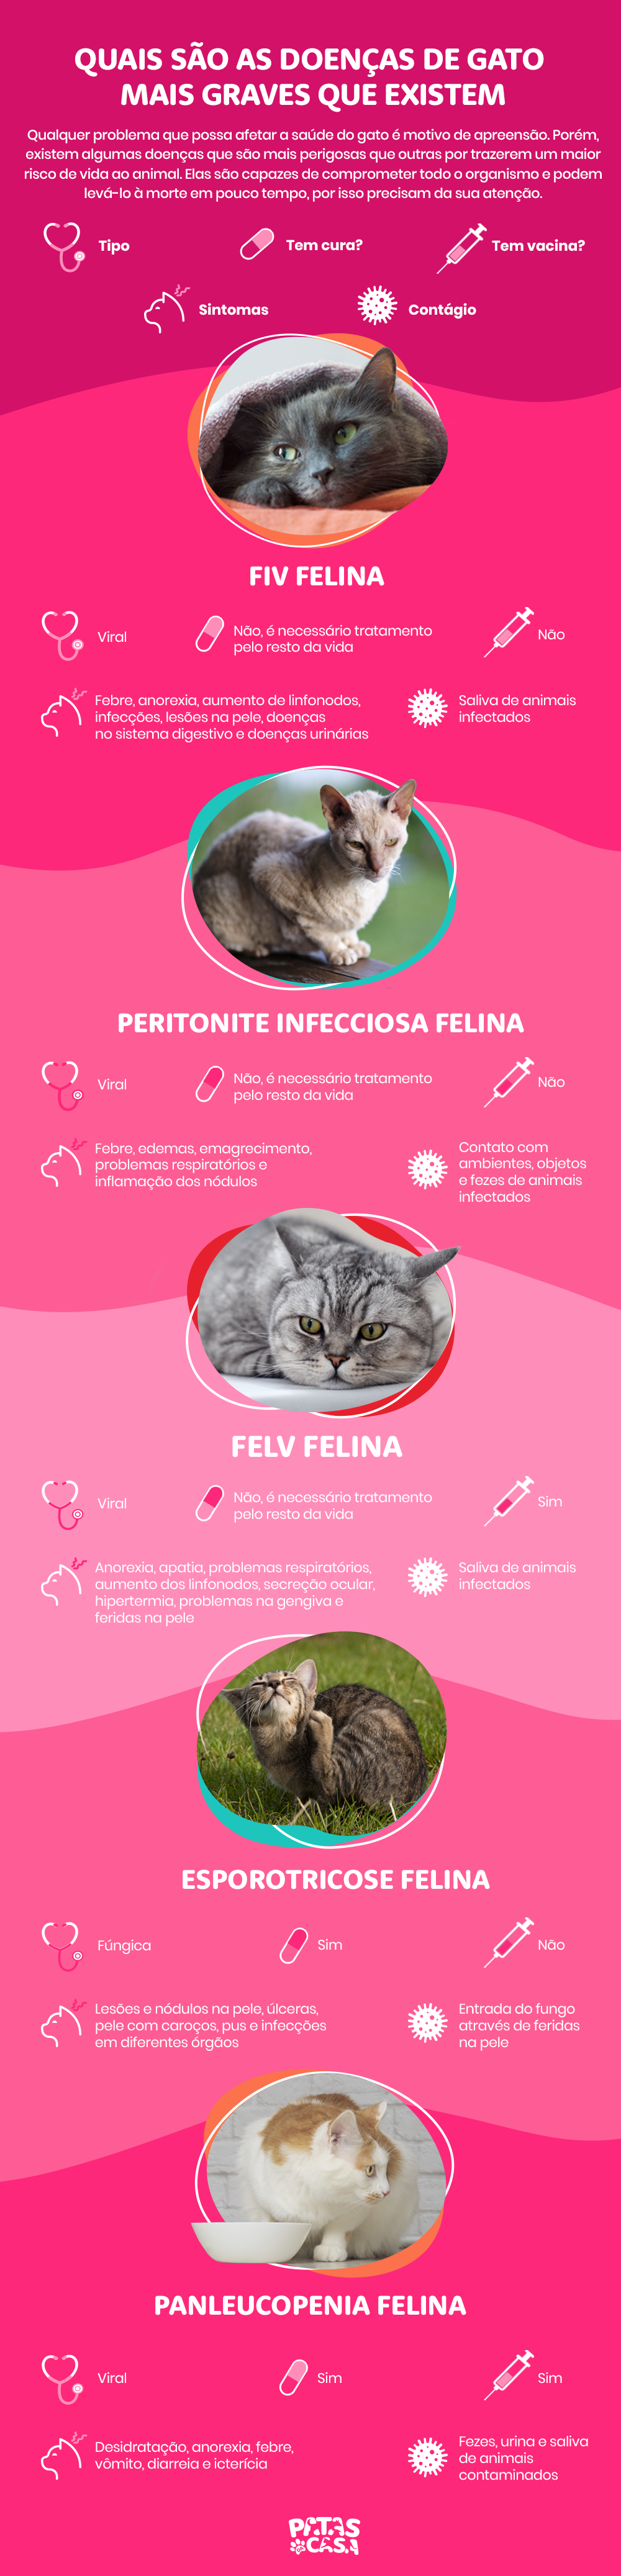 infográfico sobre doenças de gato